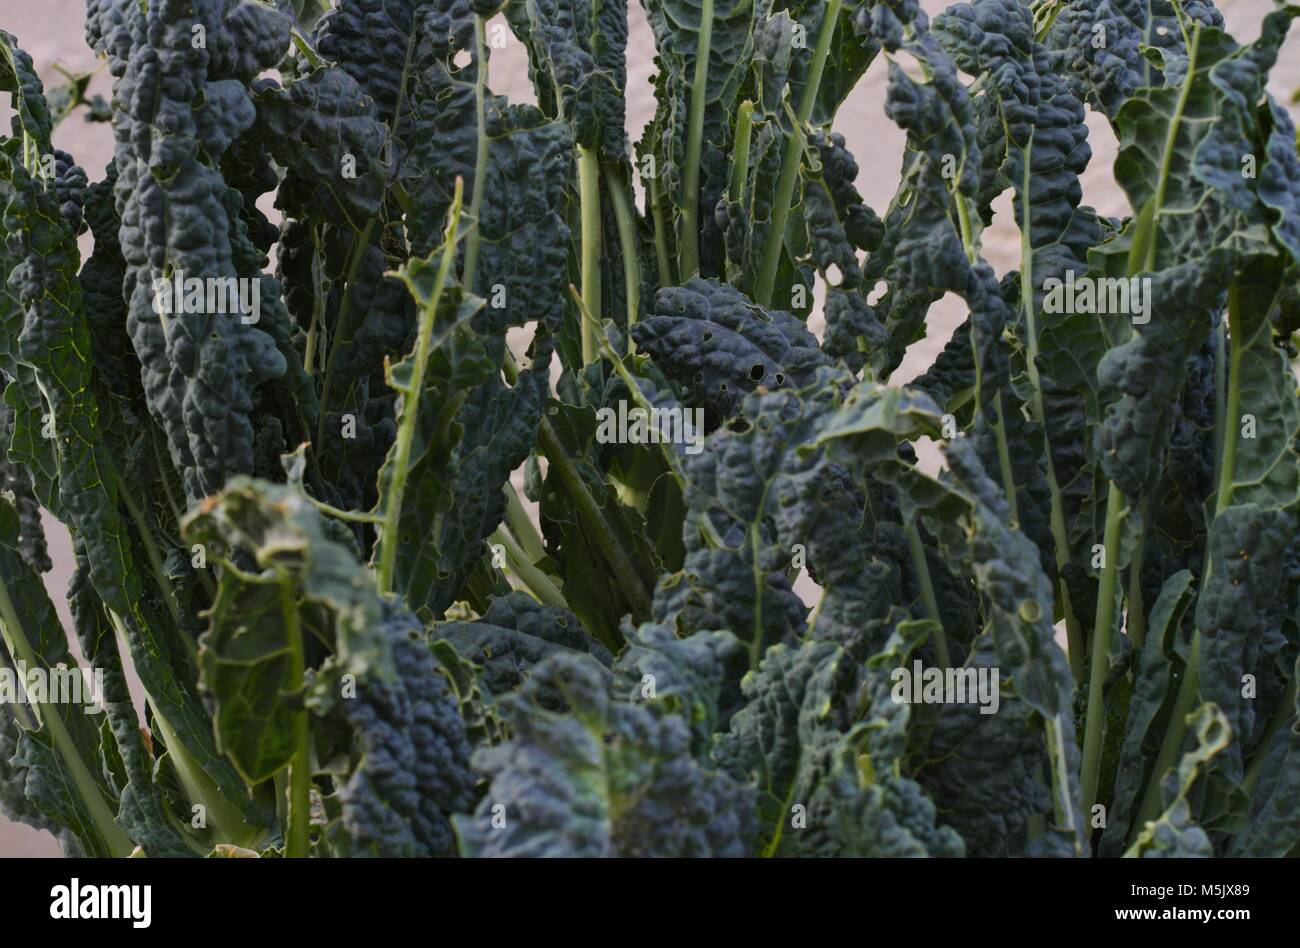 Tuscan kale ravaged by caterpillars. Stock Photo